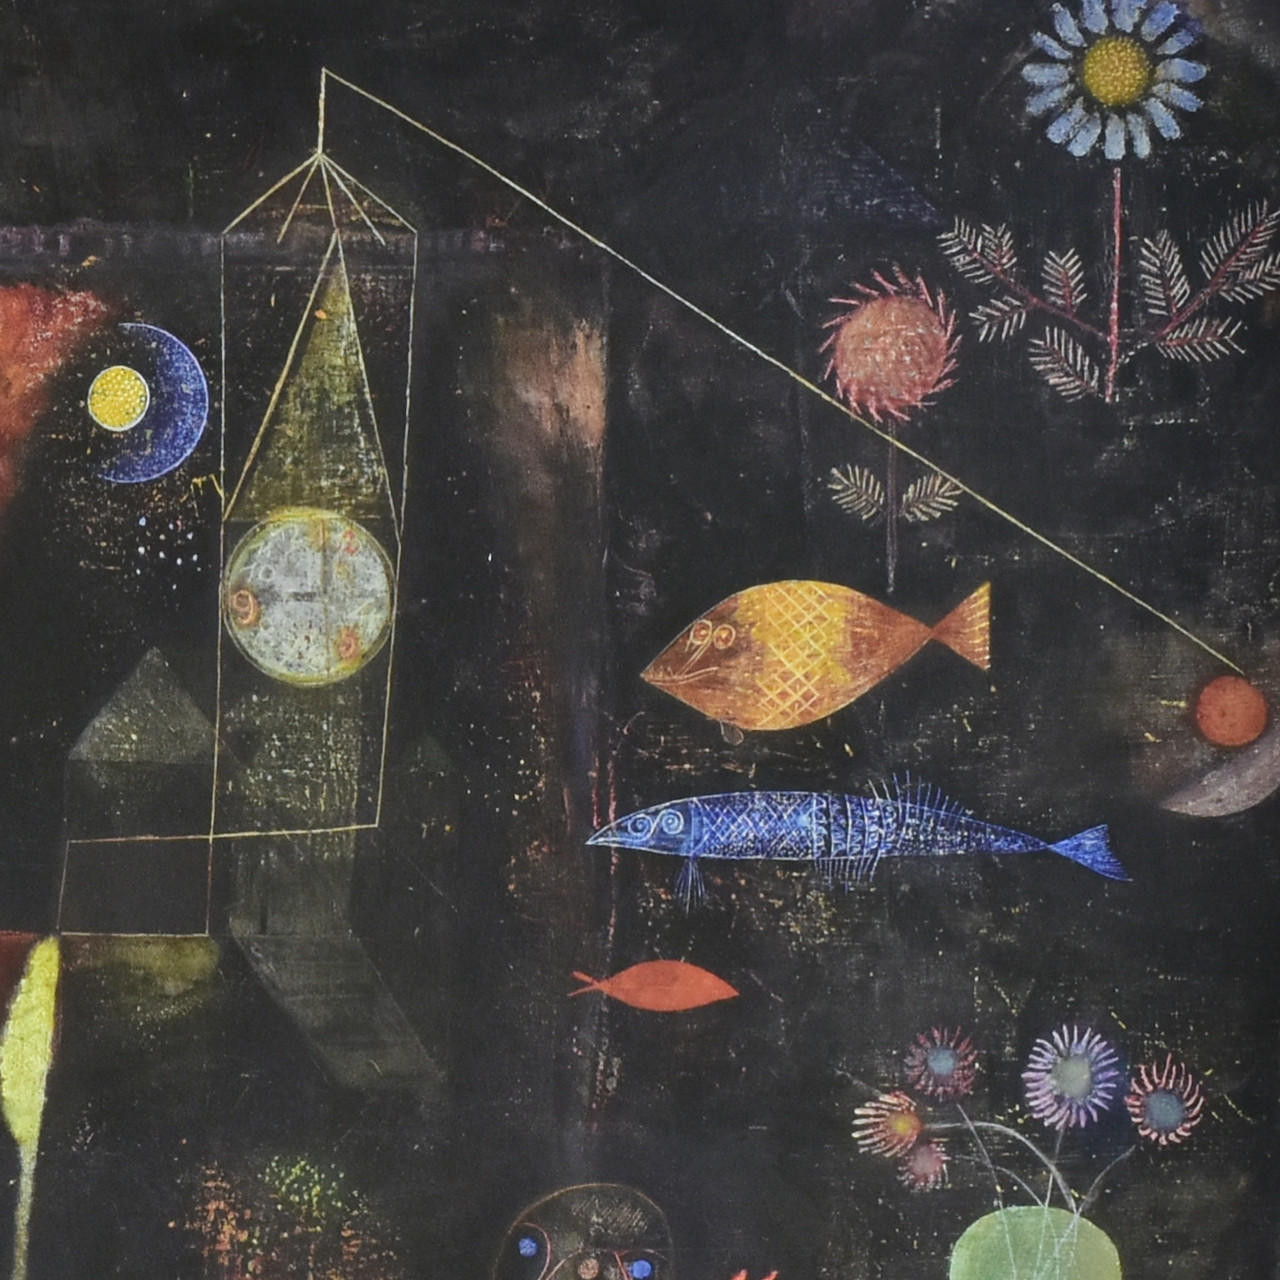 Paul Klee "Fish Magic" Print - Image 2 of 2